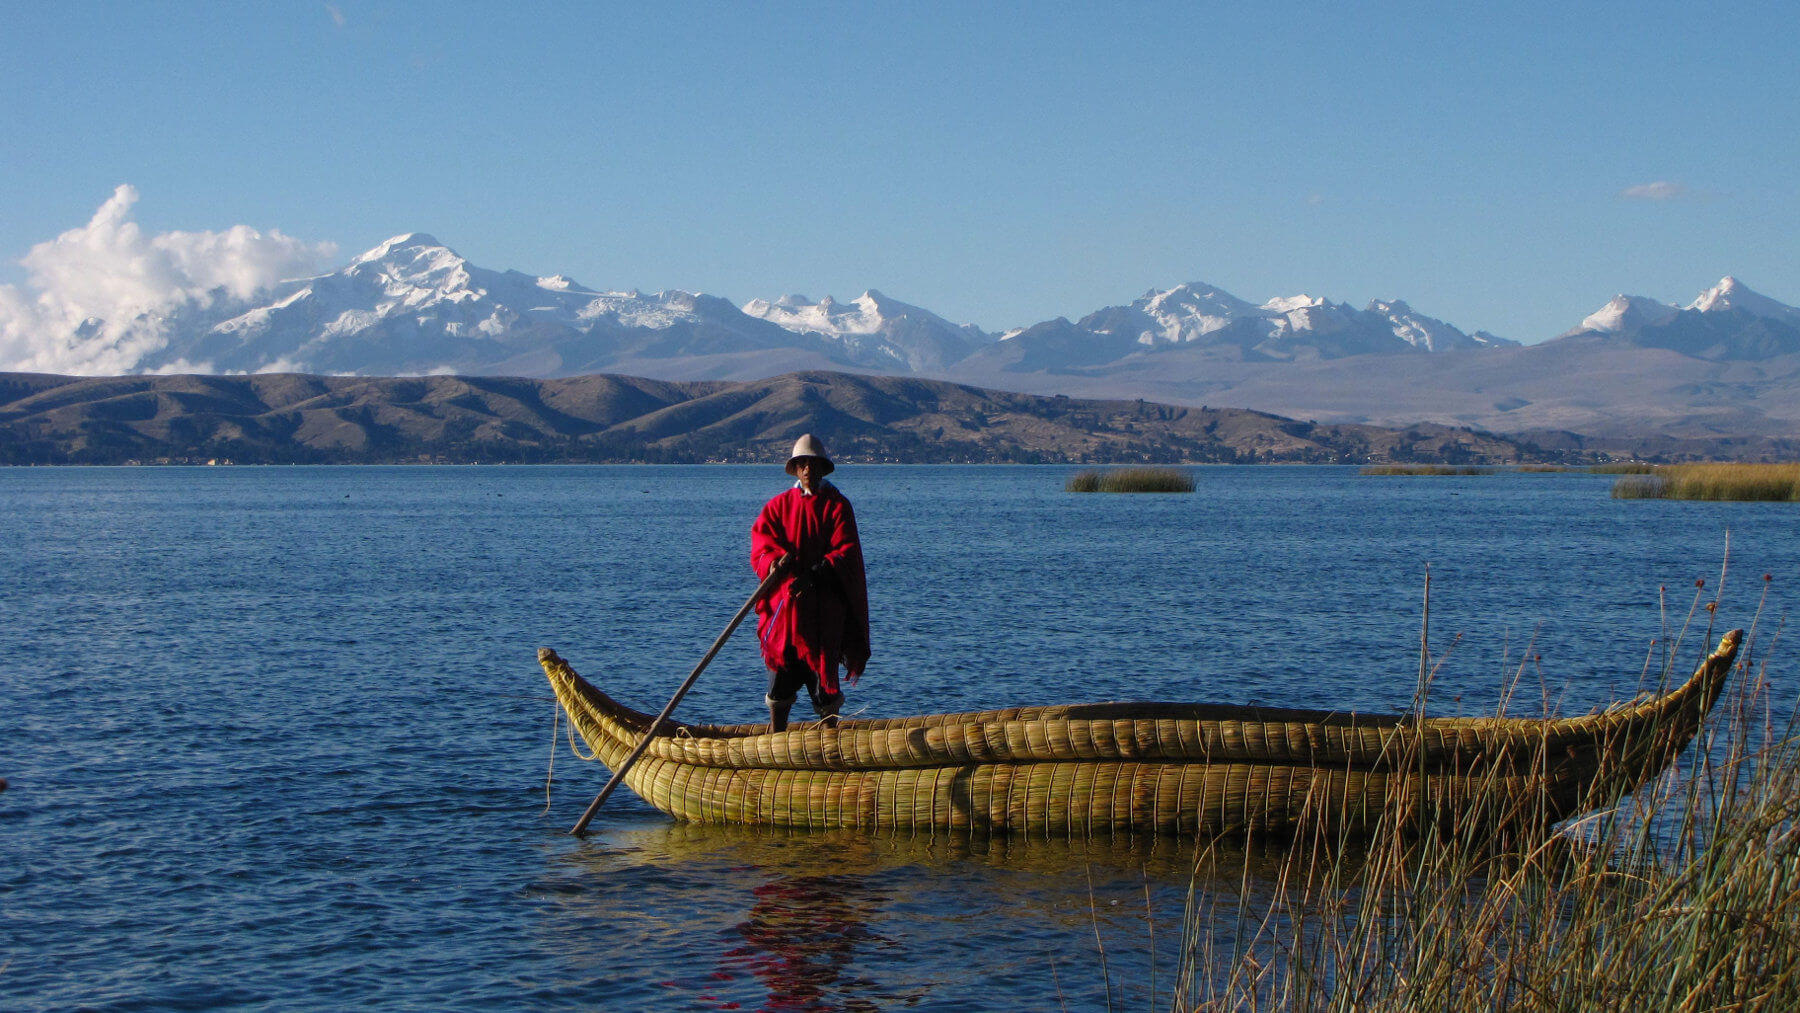 Titicaca lake, Peru